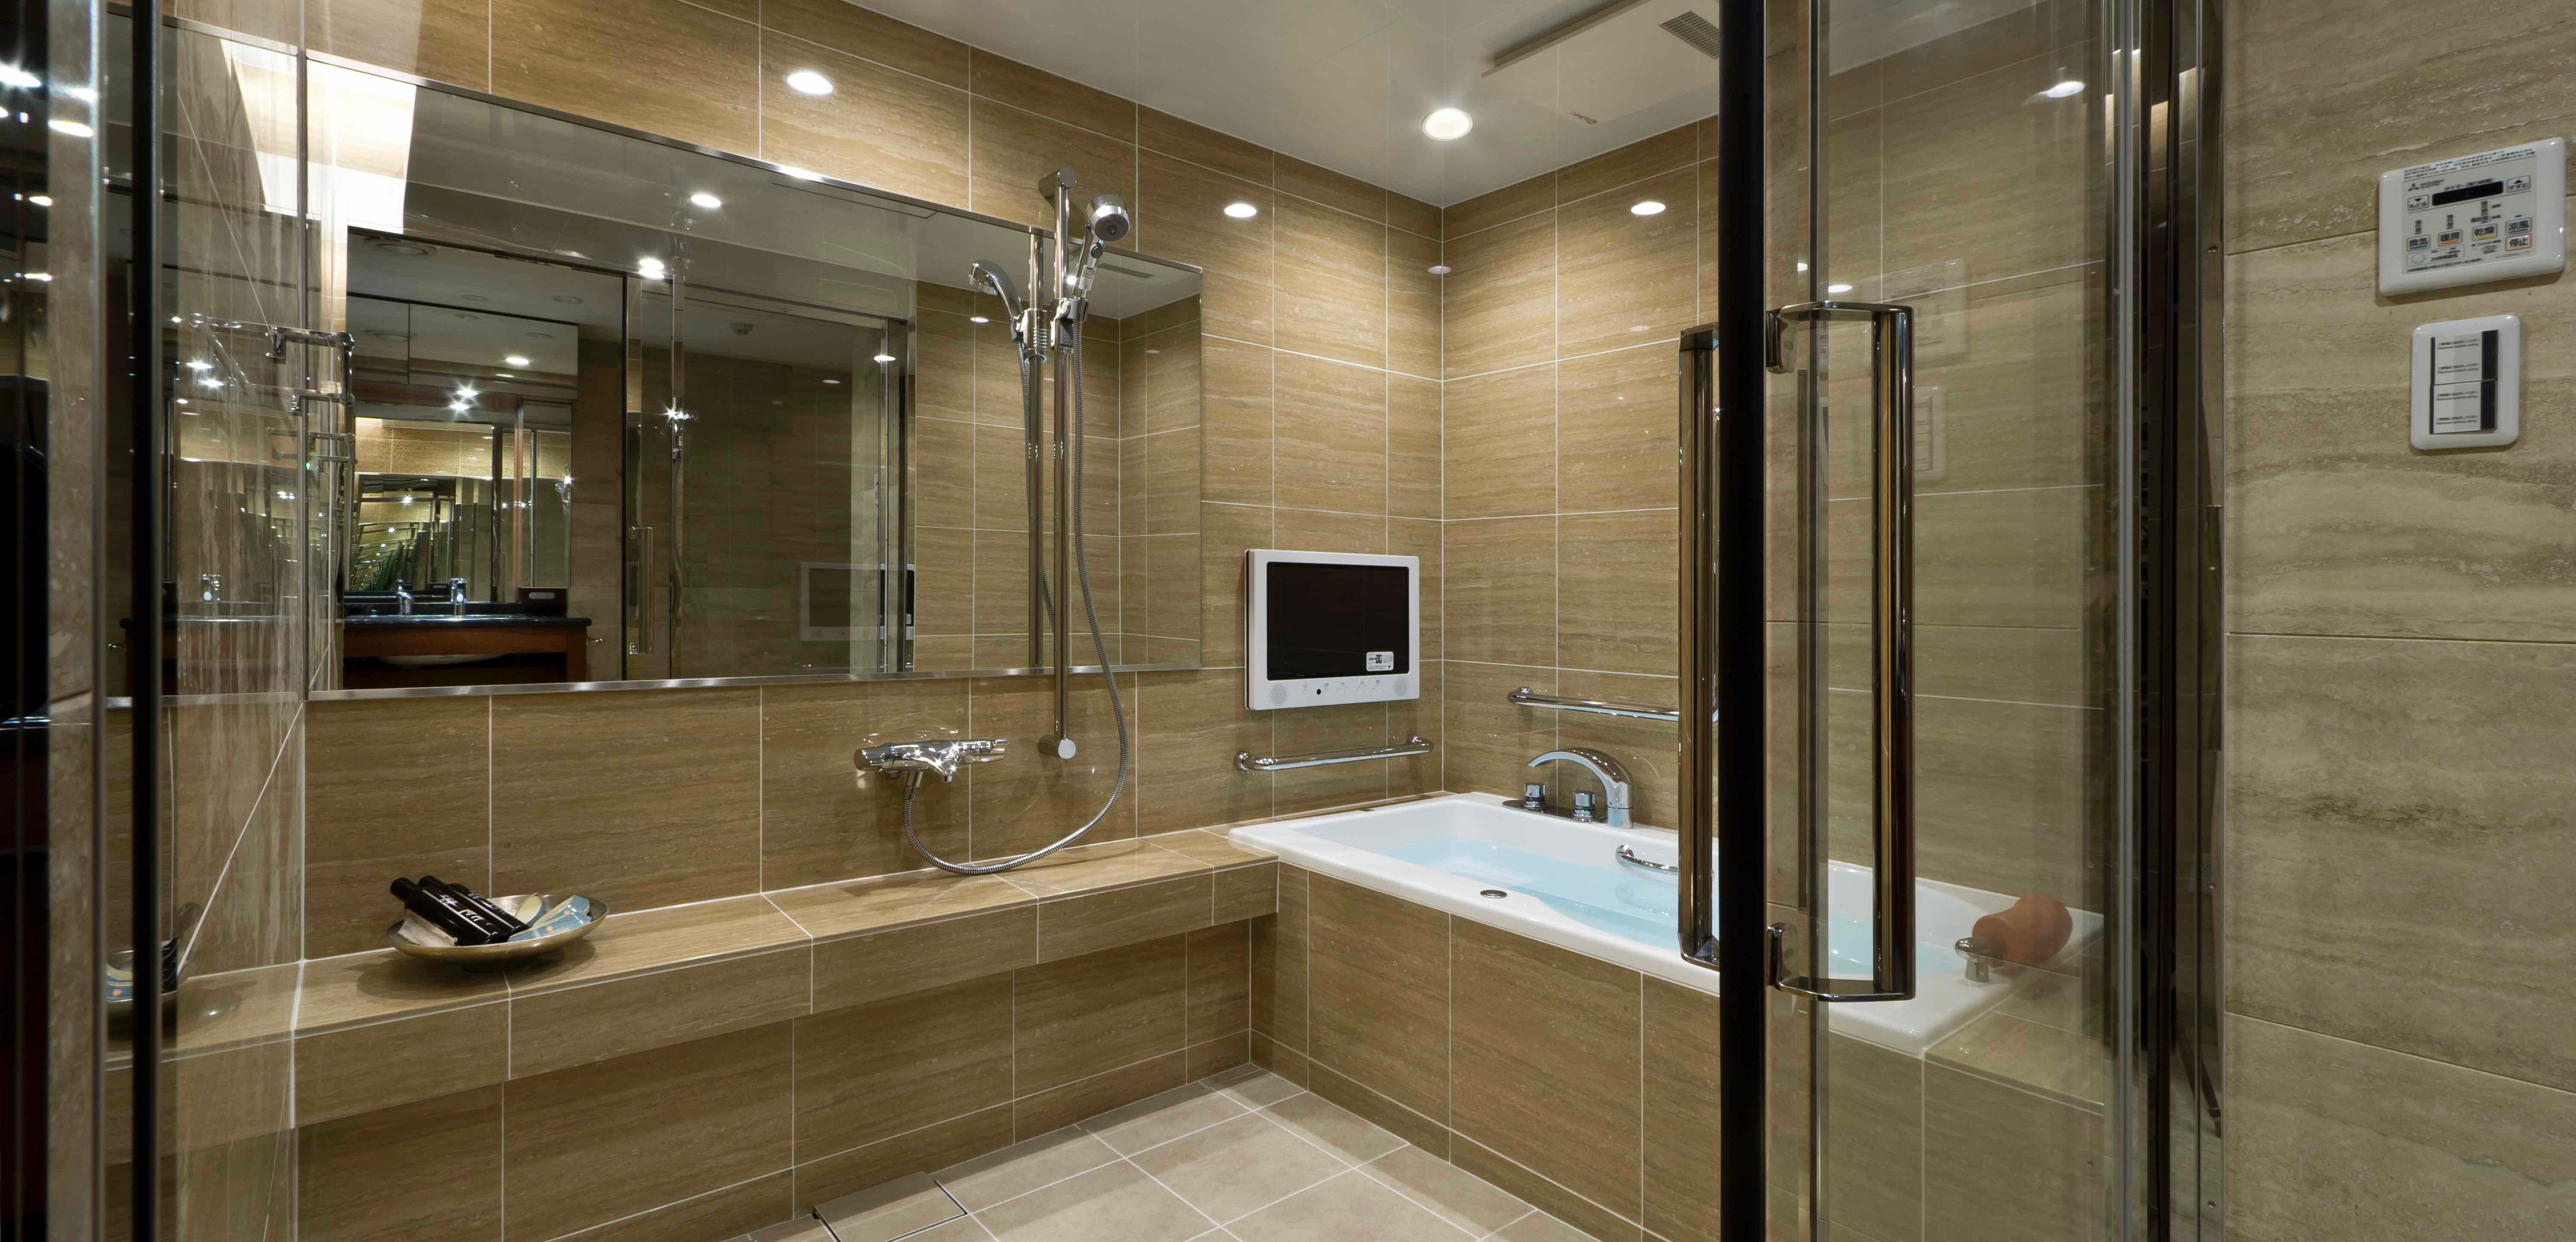 大理石壁が美しい高品質バスルーム 部位 部屋別事例一覧 リノベーション東京 理想の部屋